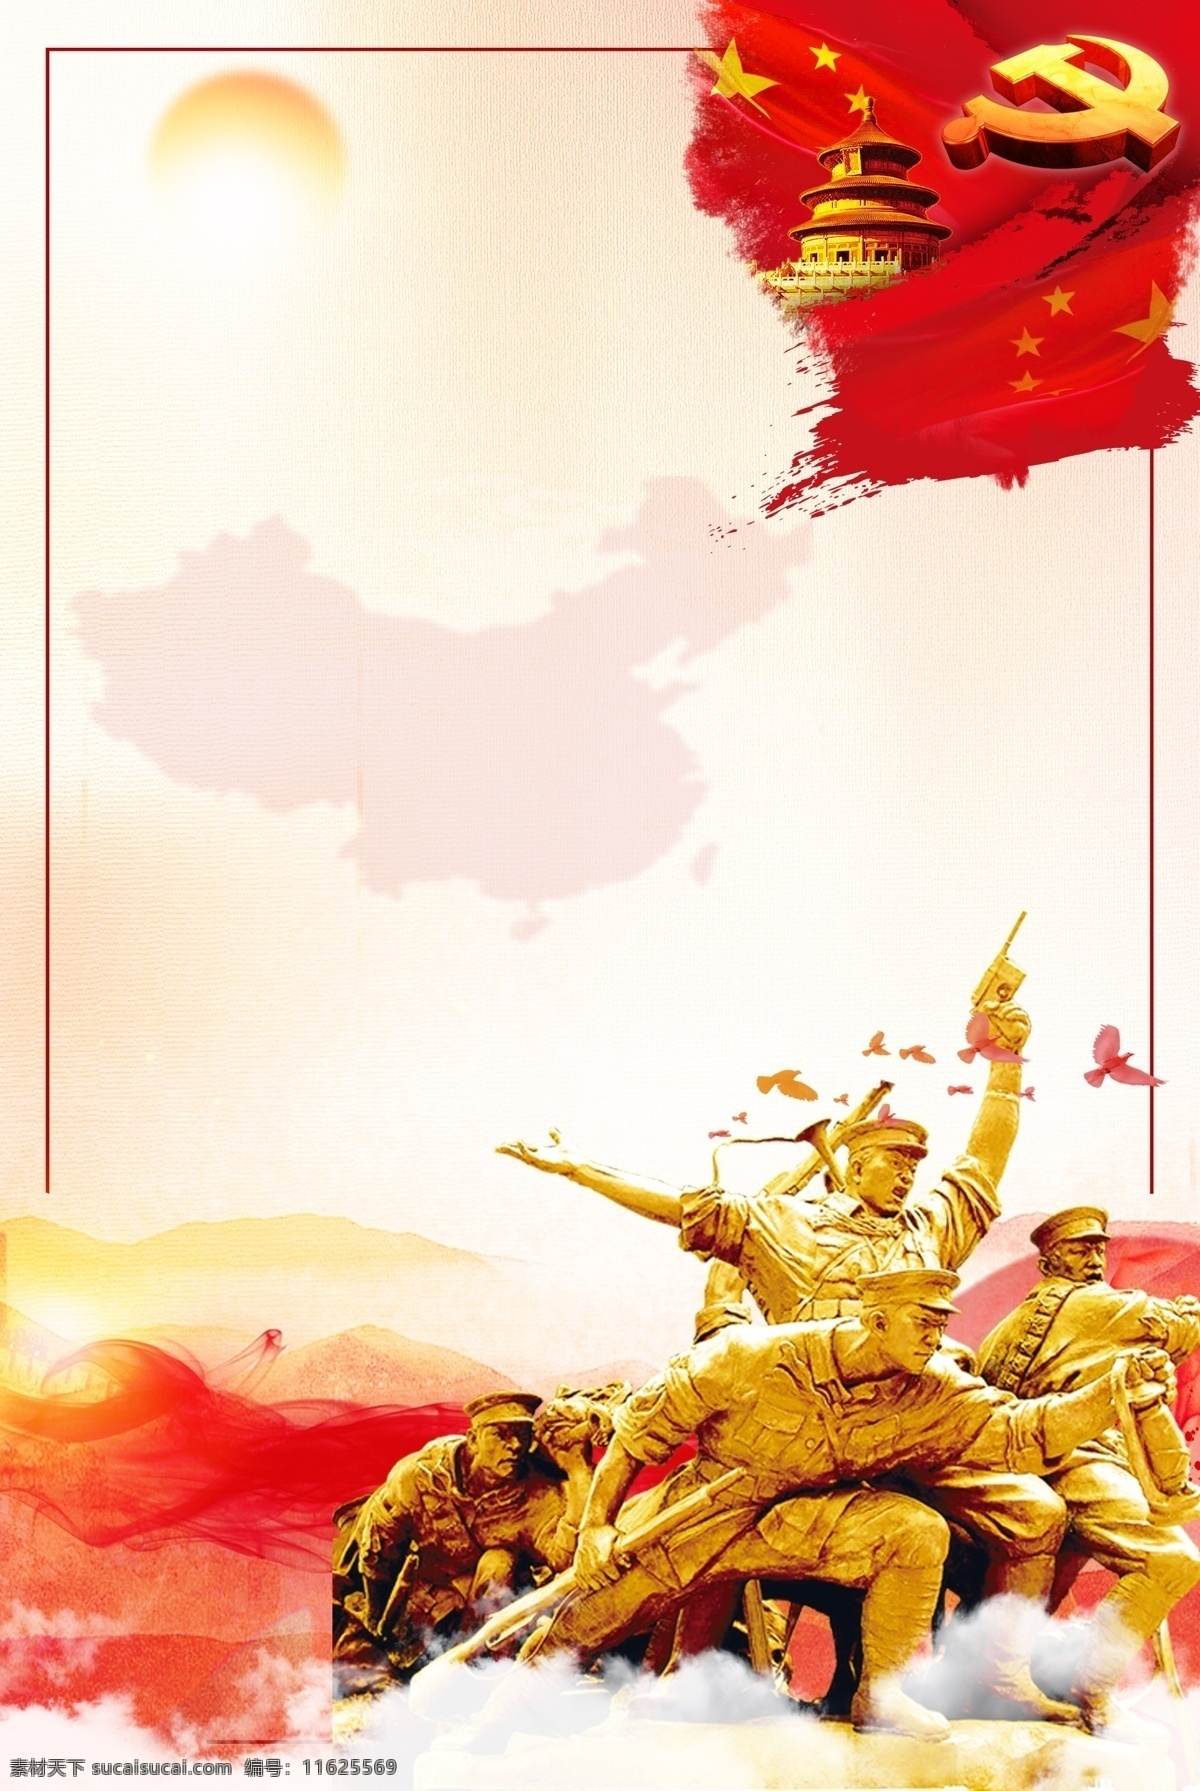 抗日战争 胜利 周年 海报 抗日 战争 73周年 中国红 歌名 胜利纪念 红旗 革命战士